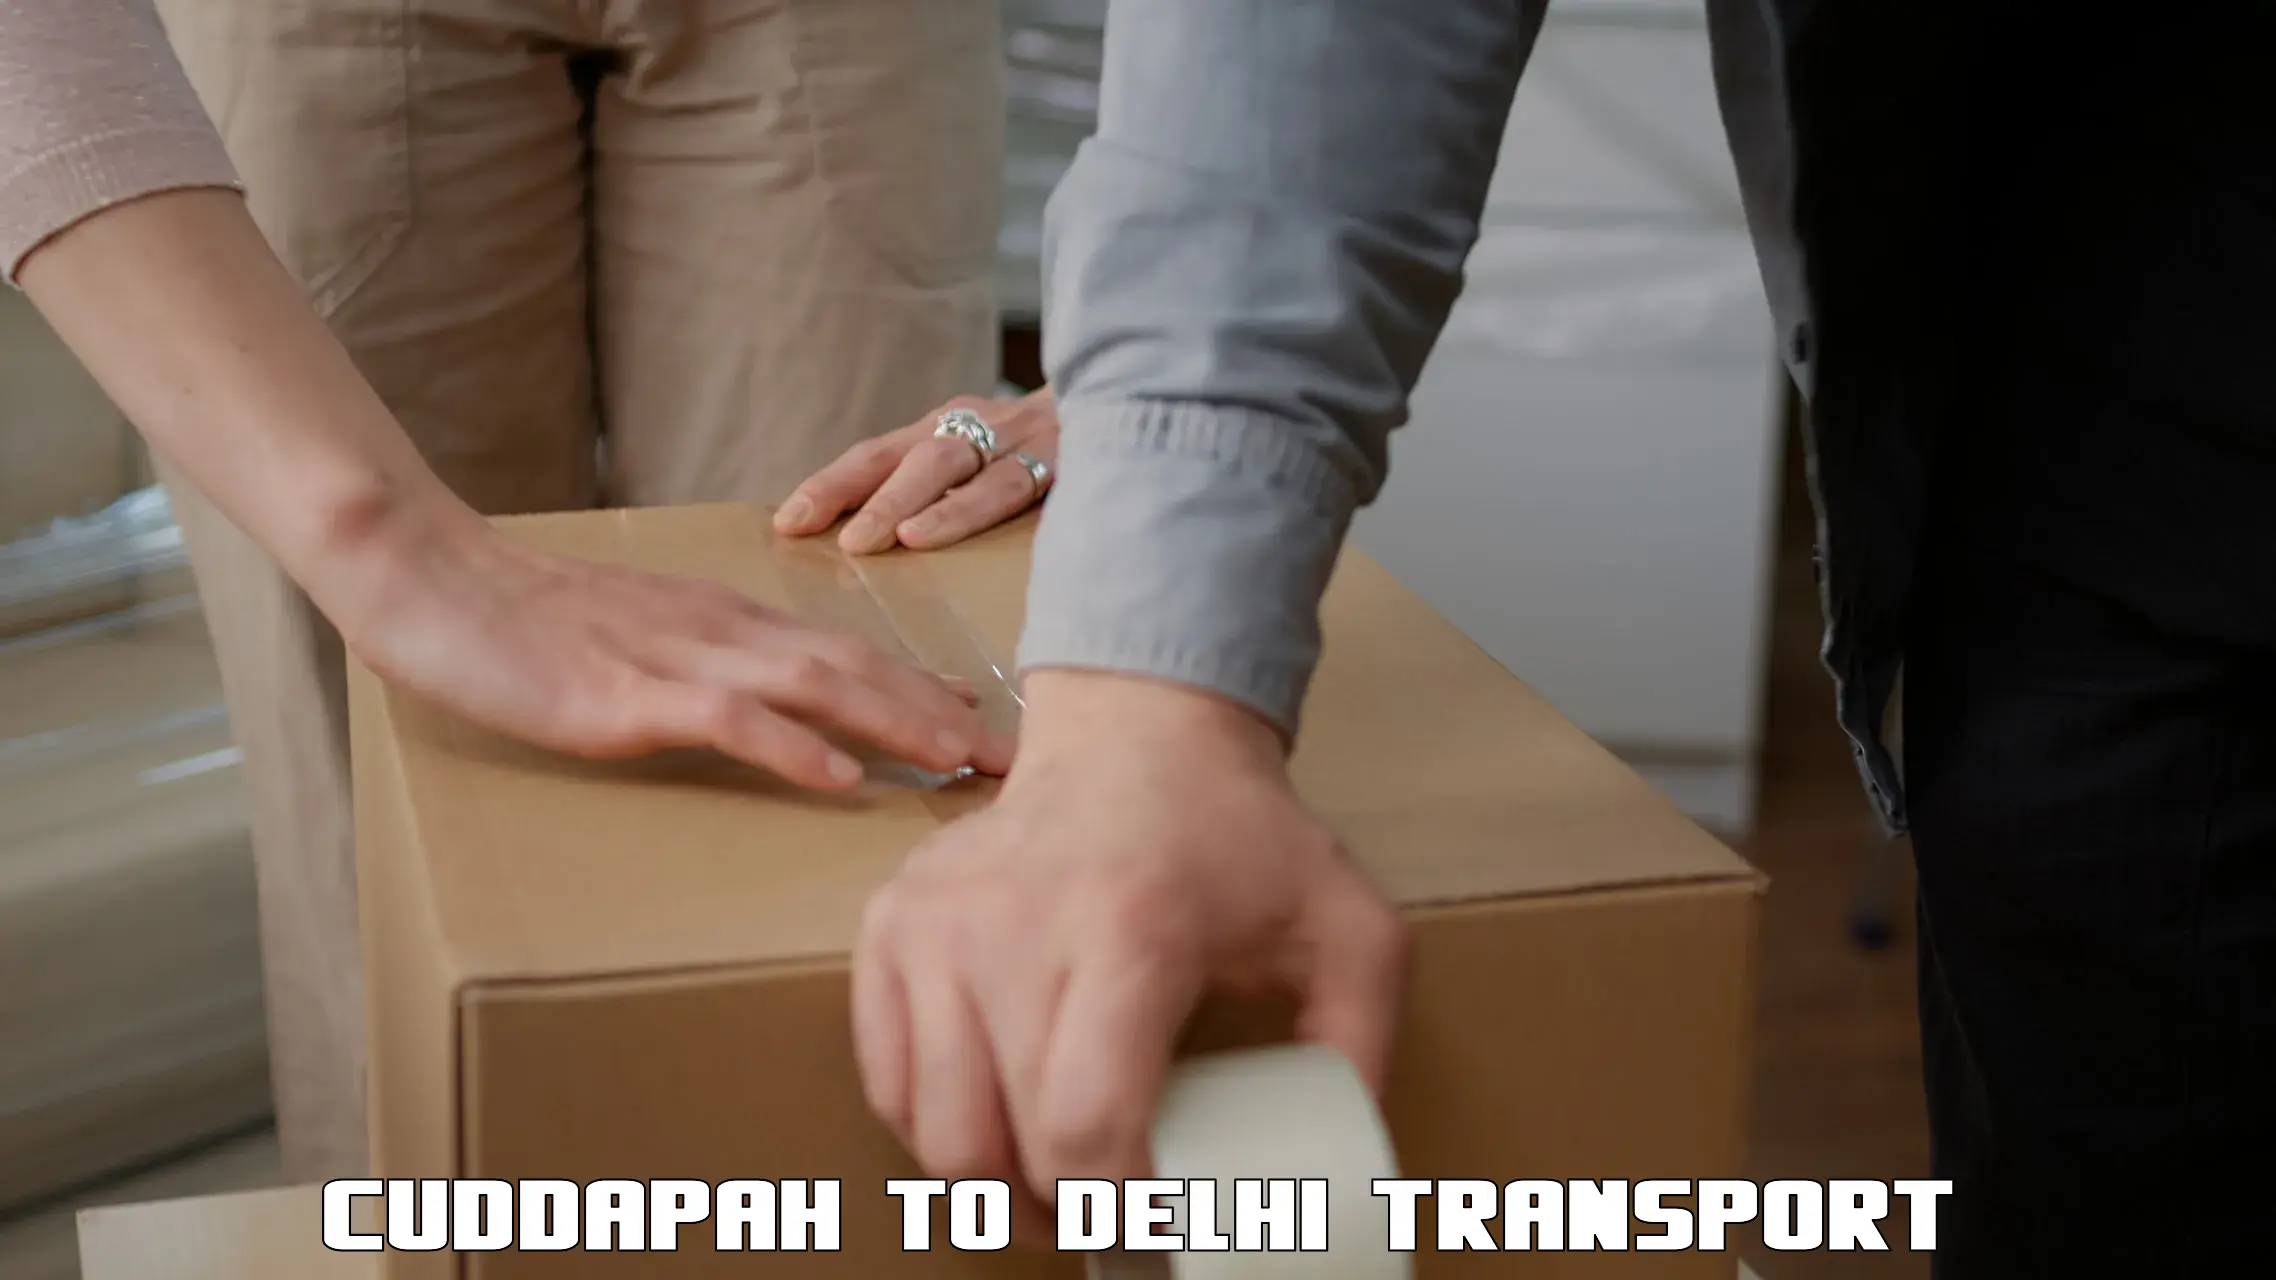 Commercial transport service Cuddapah to Jawaharlal Nehru University New Delhi